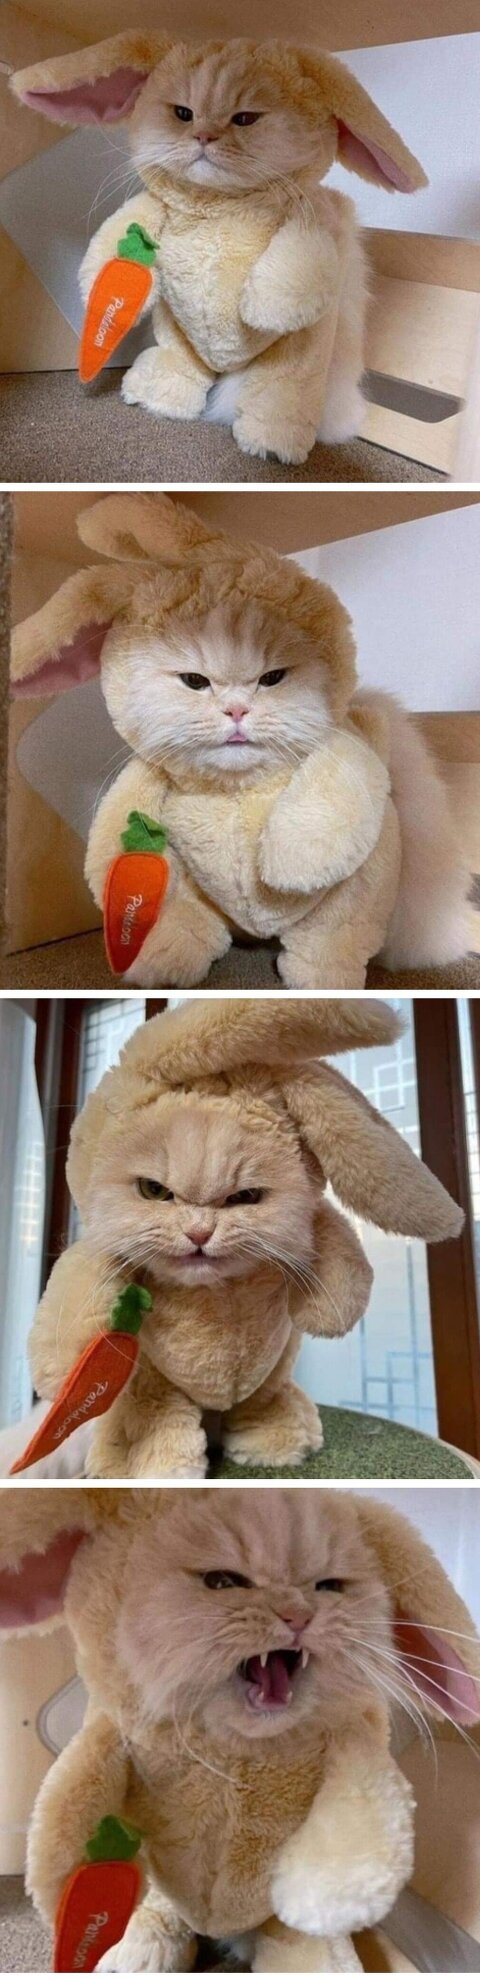 고양이한터 토끼옷 입힌 후기